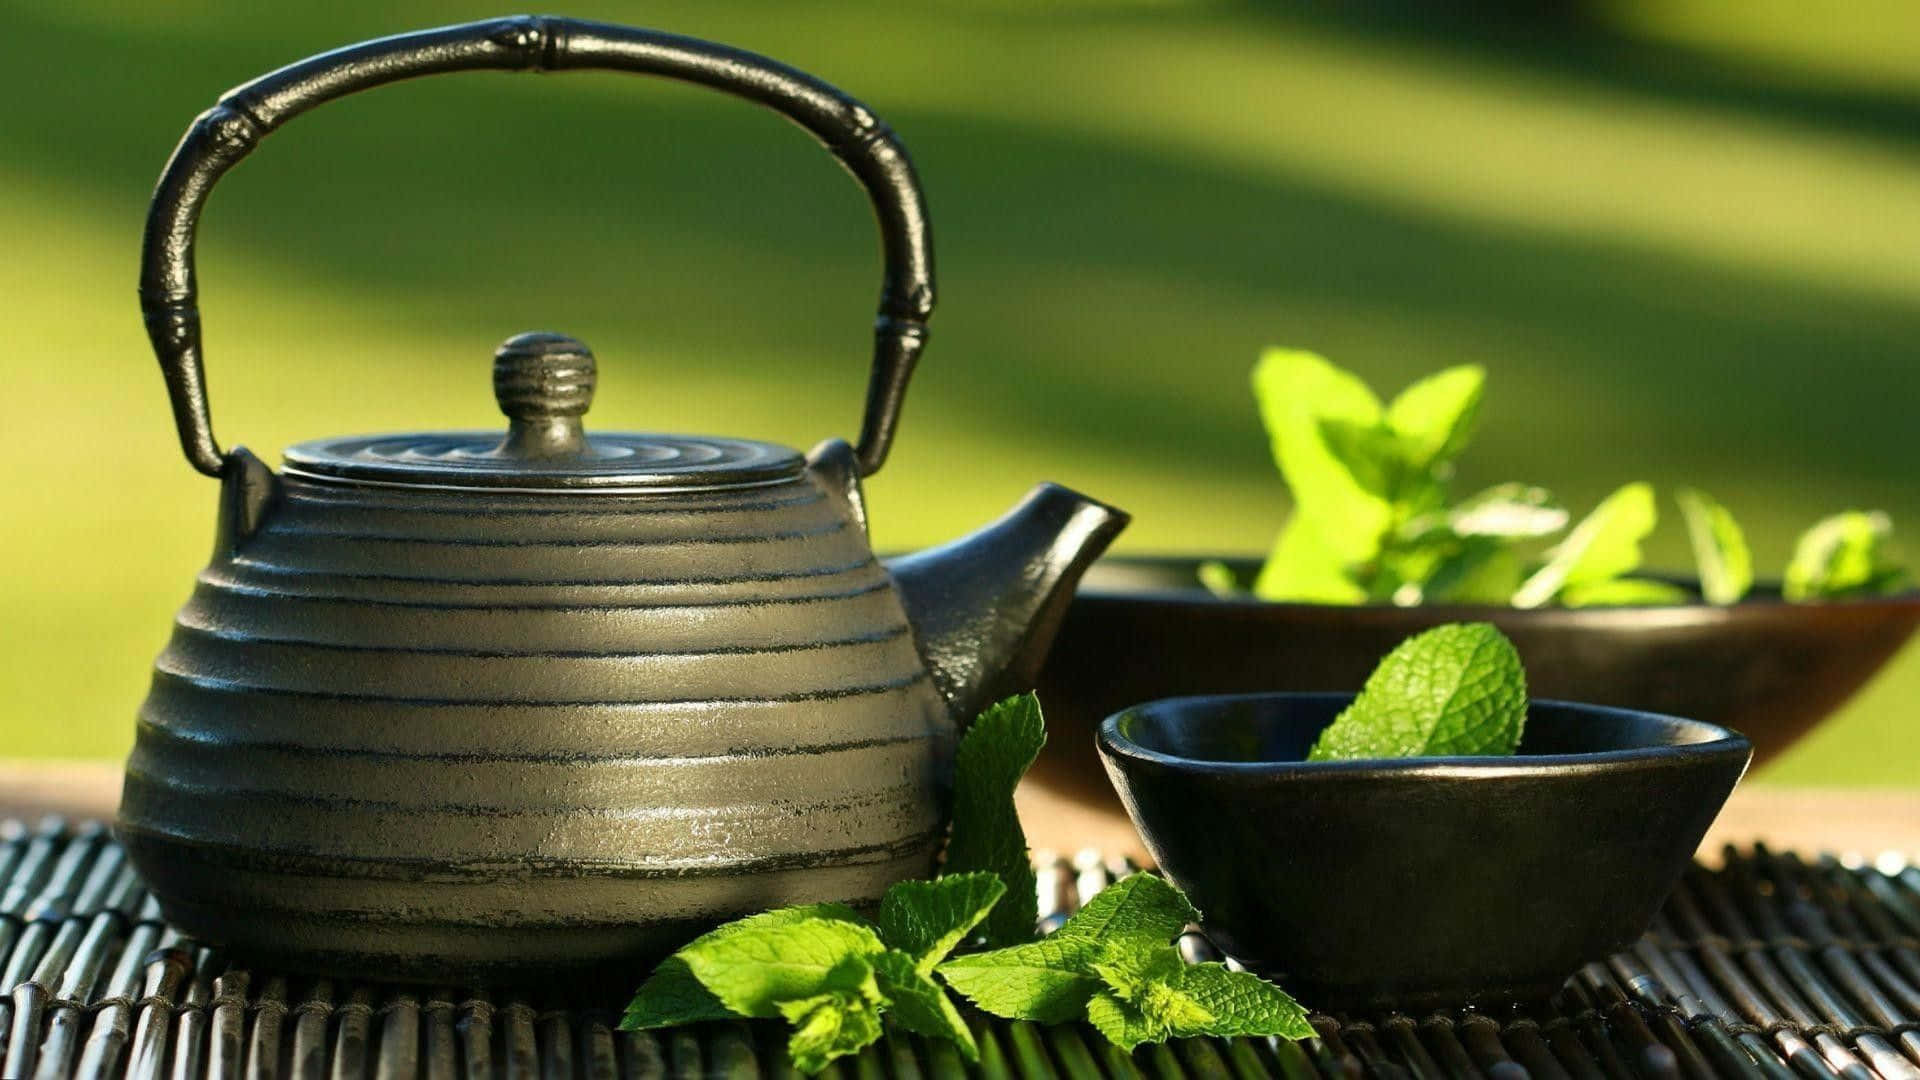 Pure Matcha Green Tea Powder in a Bowl Wallpaper